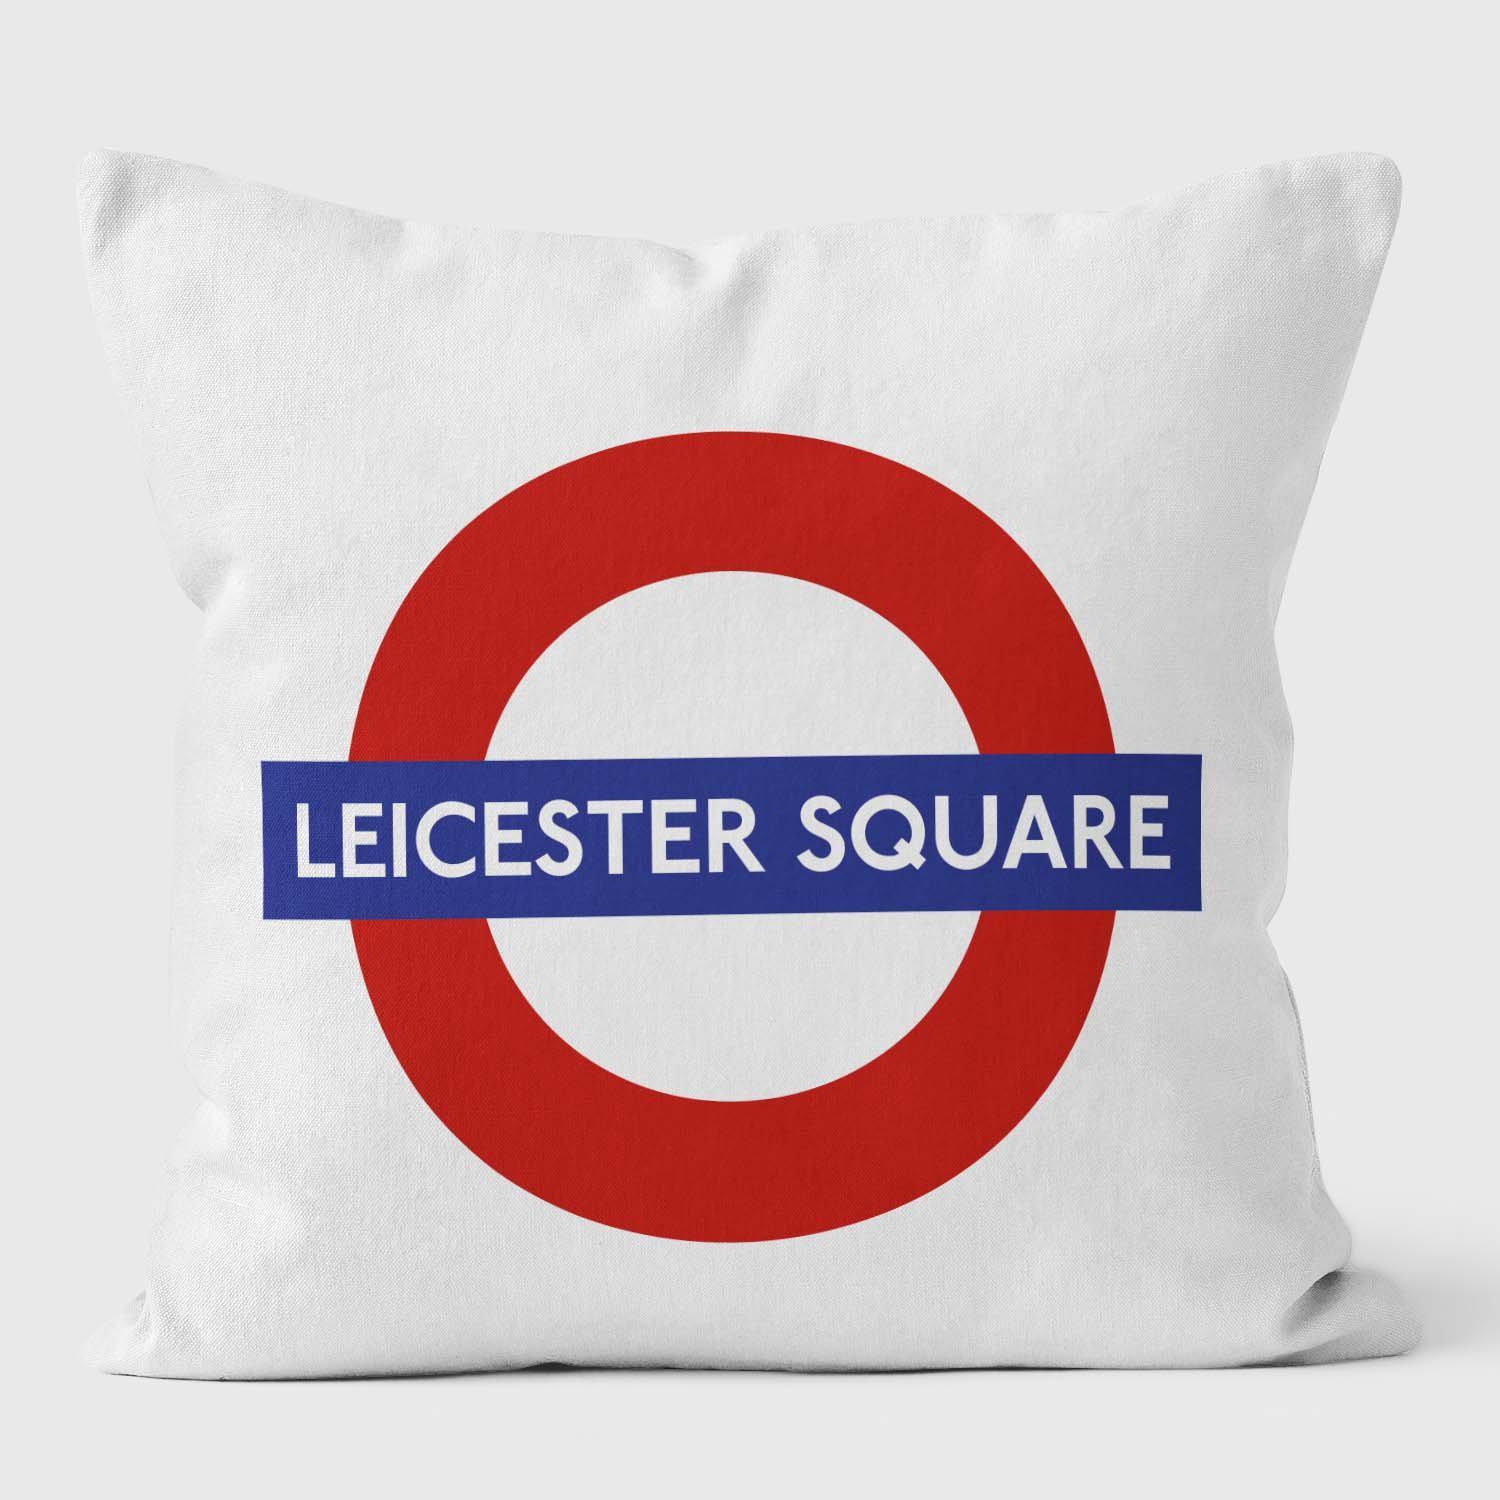 Leicester Sqaure London Underground Tube Station Roundel Cushion - Handmade Cushions UK - WeLoveCushions